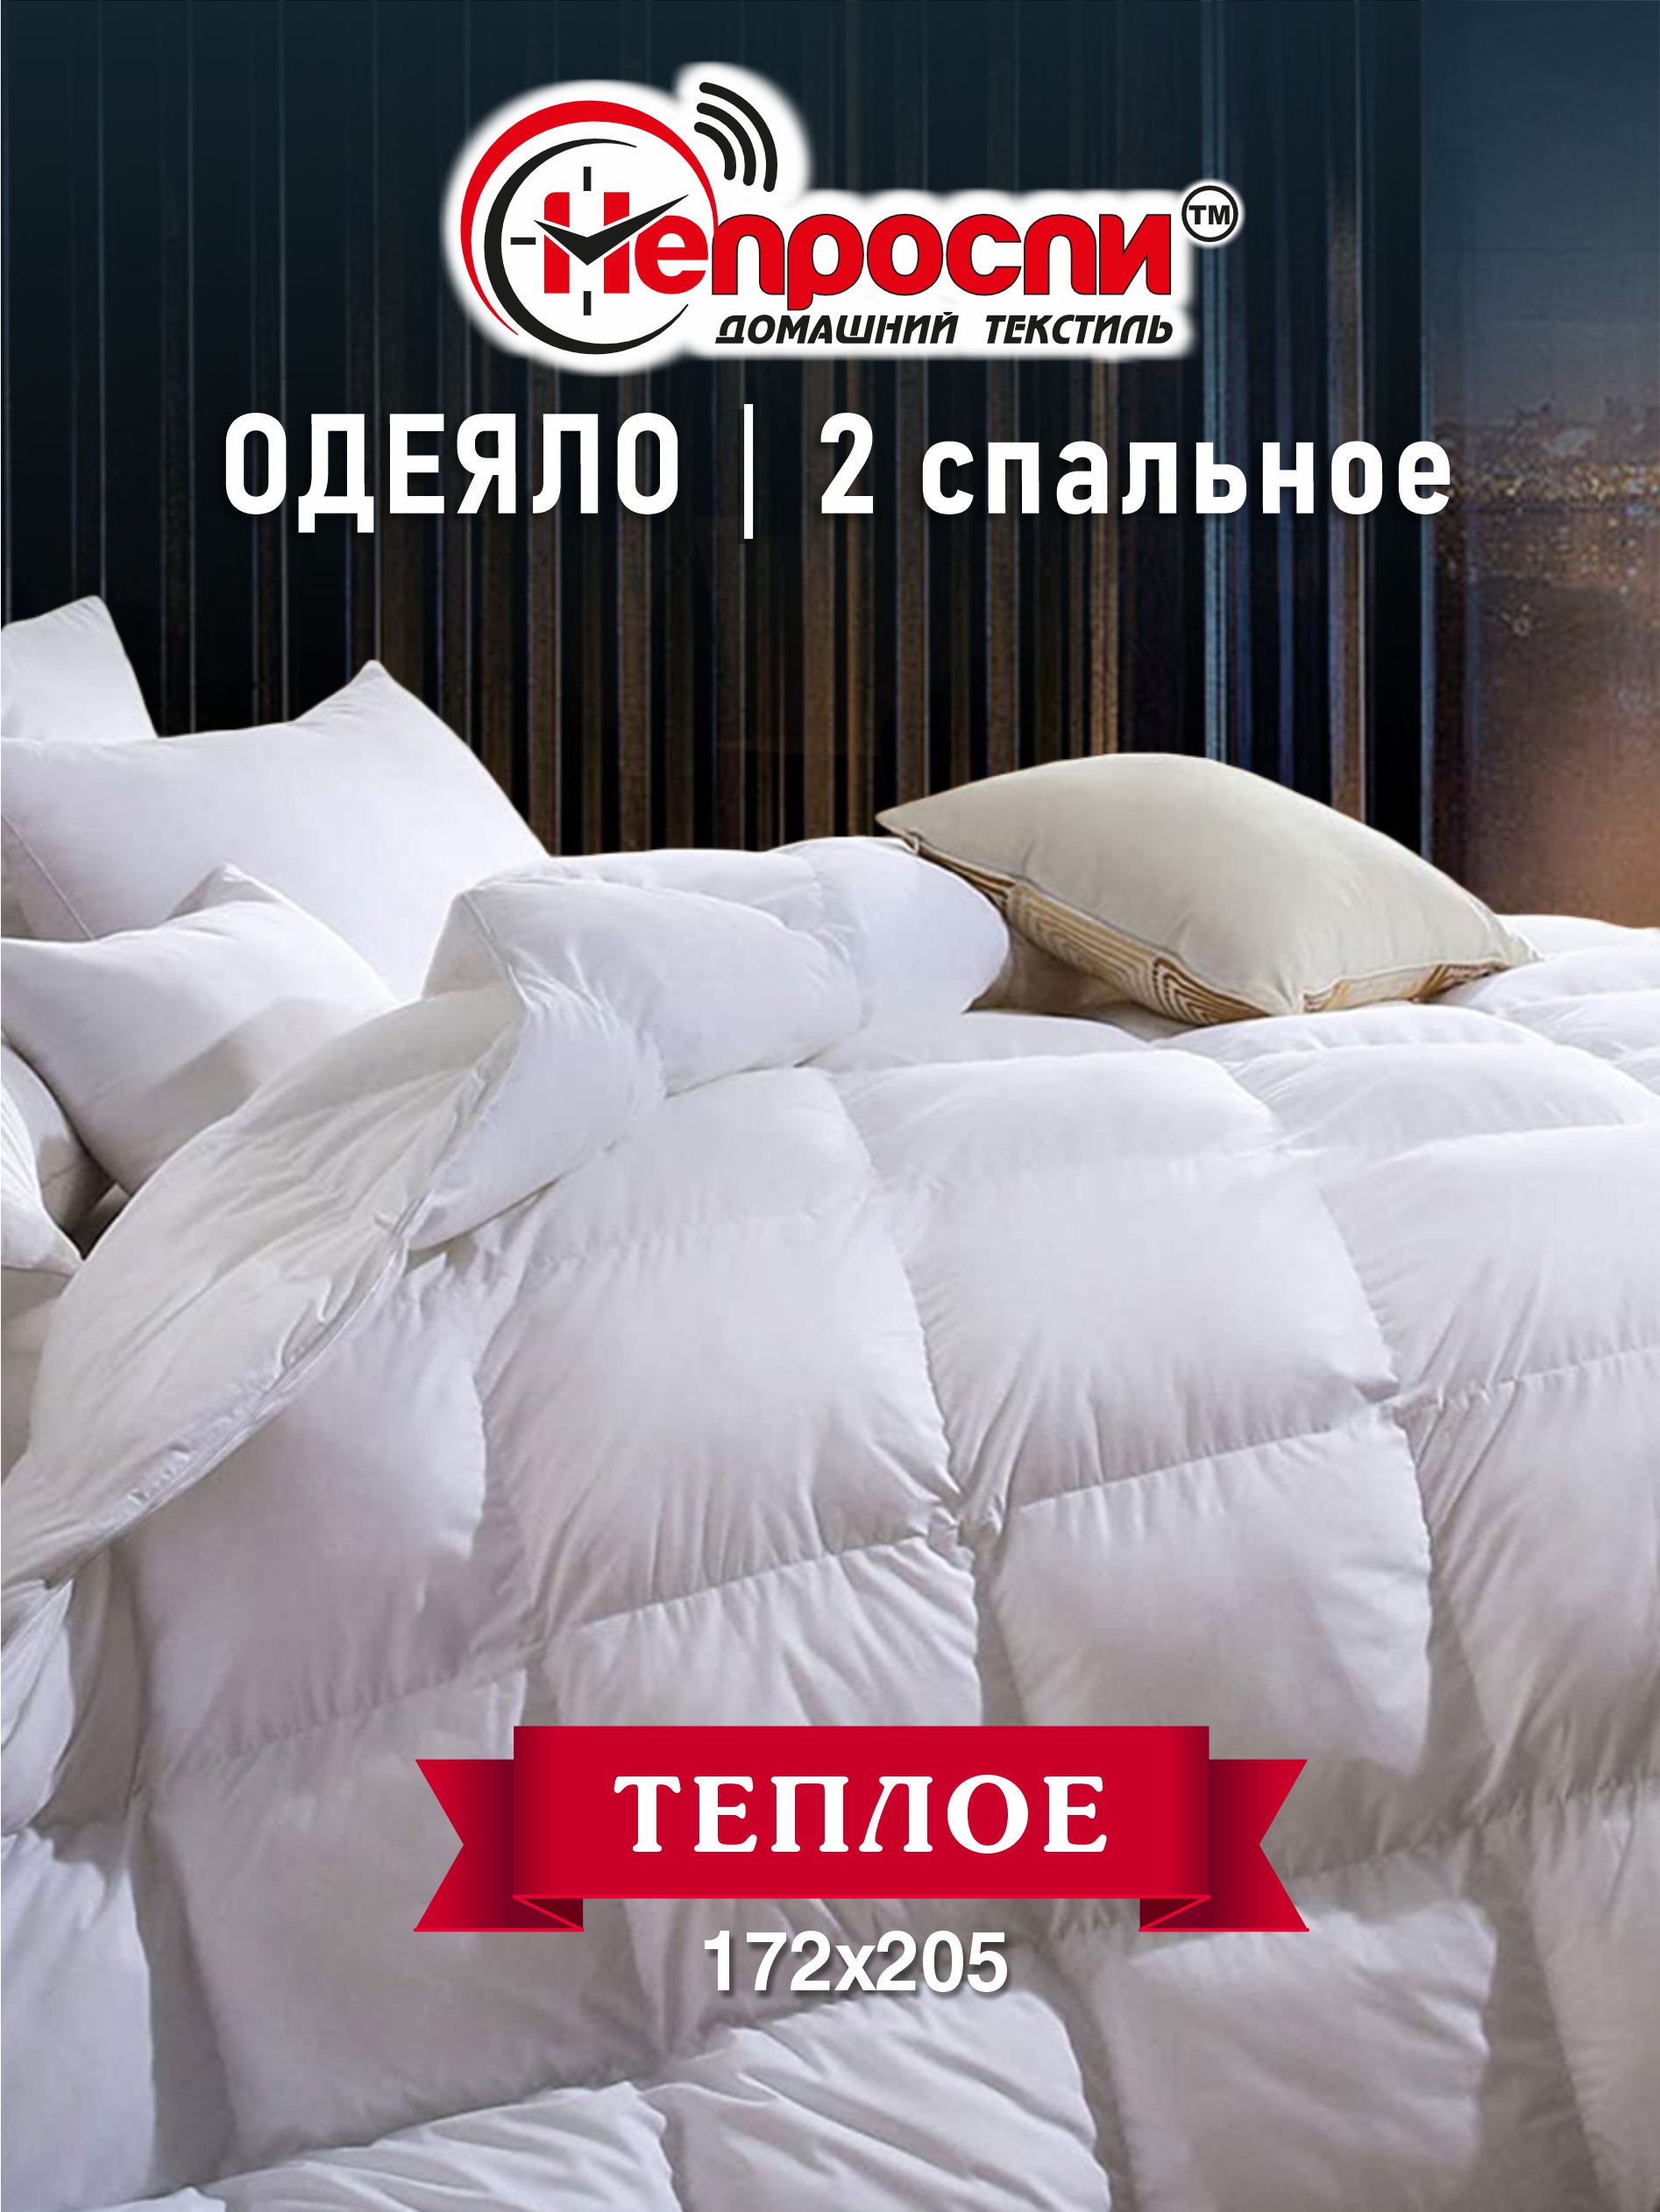 Одеяло Непроспи Бамбук 2-х спальное, 172х205 см